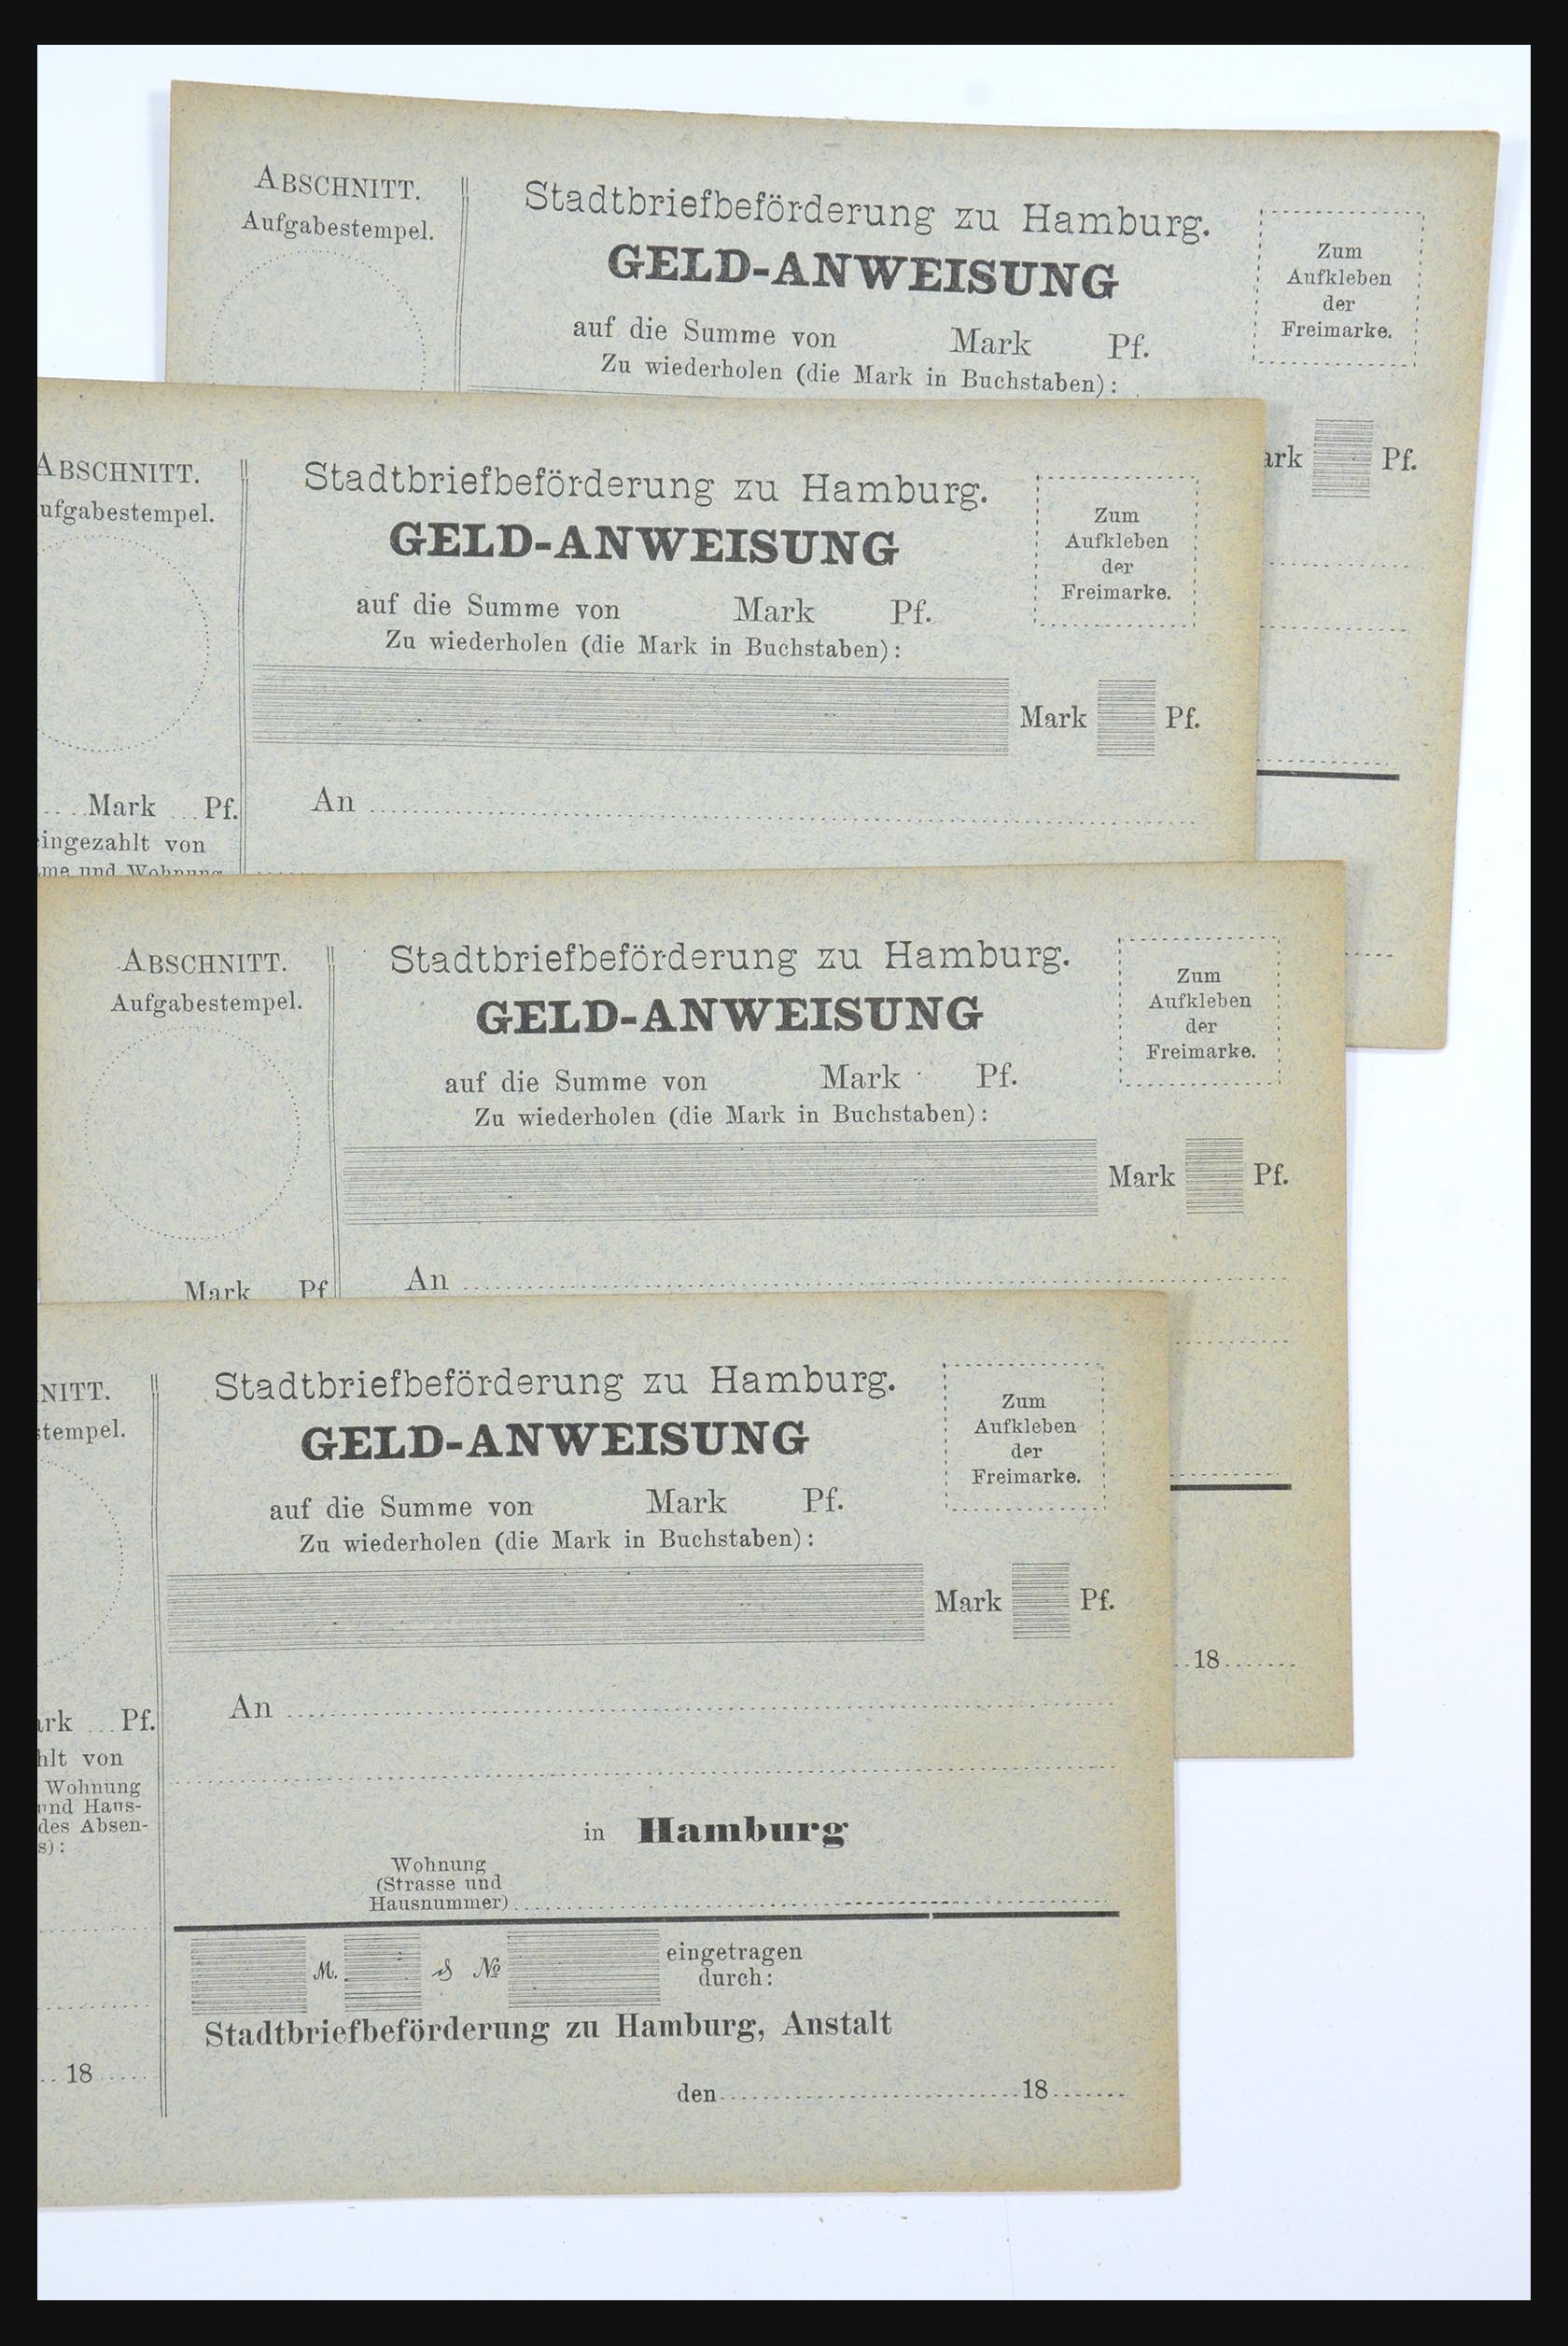 31578 264 - 31578 Germany localpost 1861-1900.